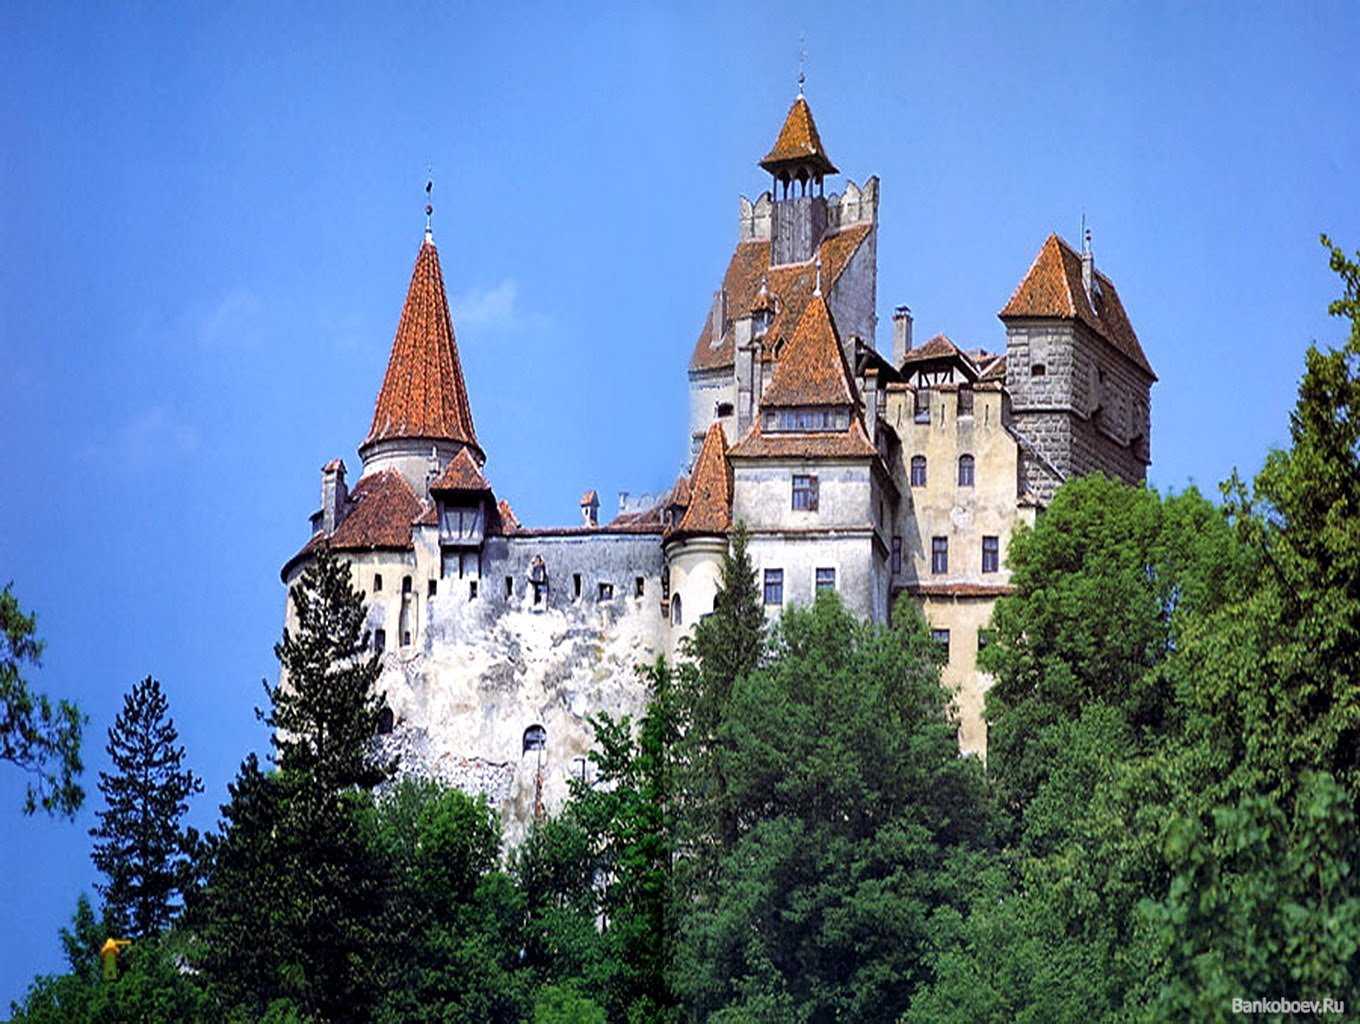 Трансильвания где это находится. Замок графа Дракулы в Румынии. Замок Влада Цепеша в Румынии. Трансильвания Румыния замок Дракулы. Замок Бран (Bran Castle), Румыния.